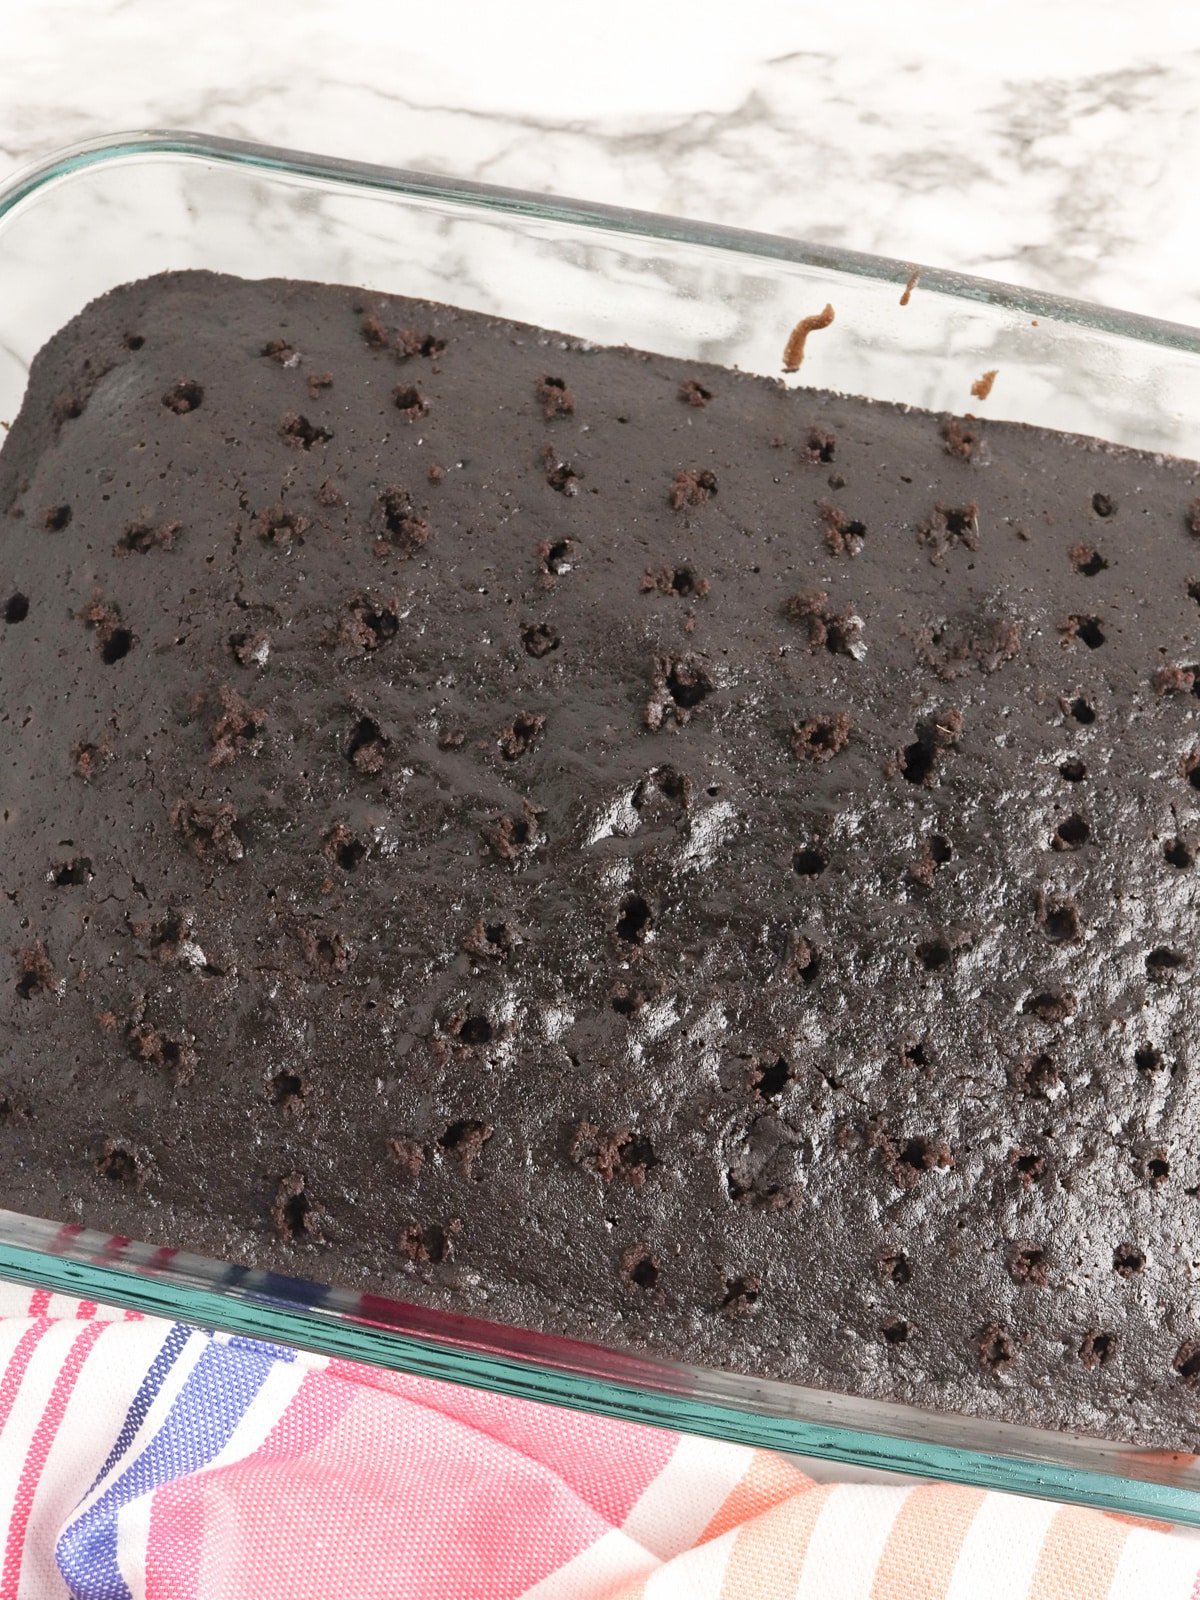 Hot Fudge Poke Cake with holes